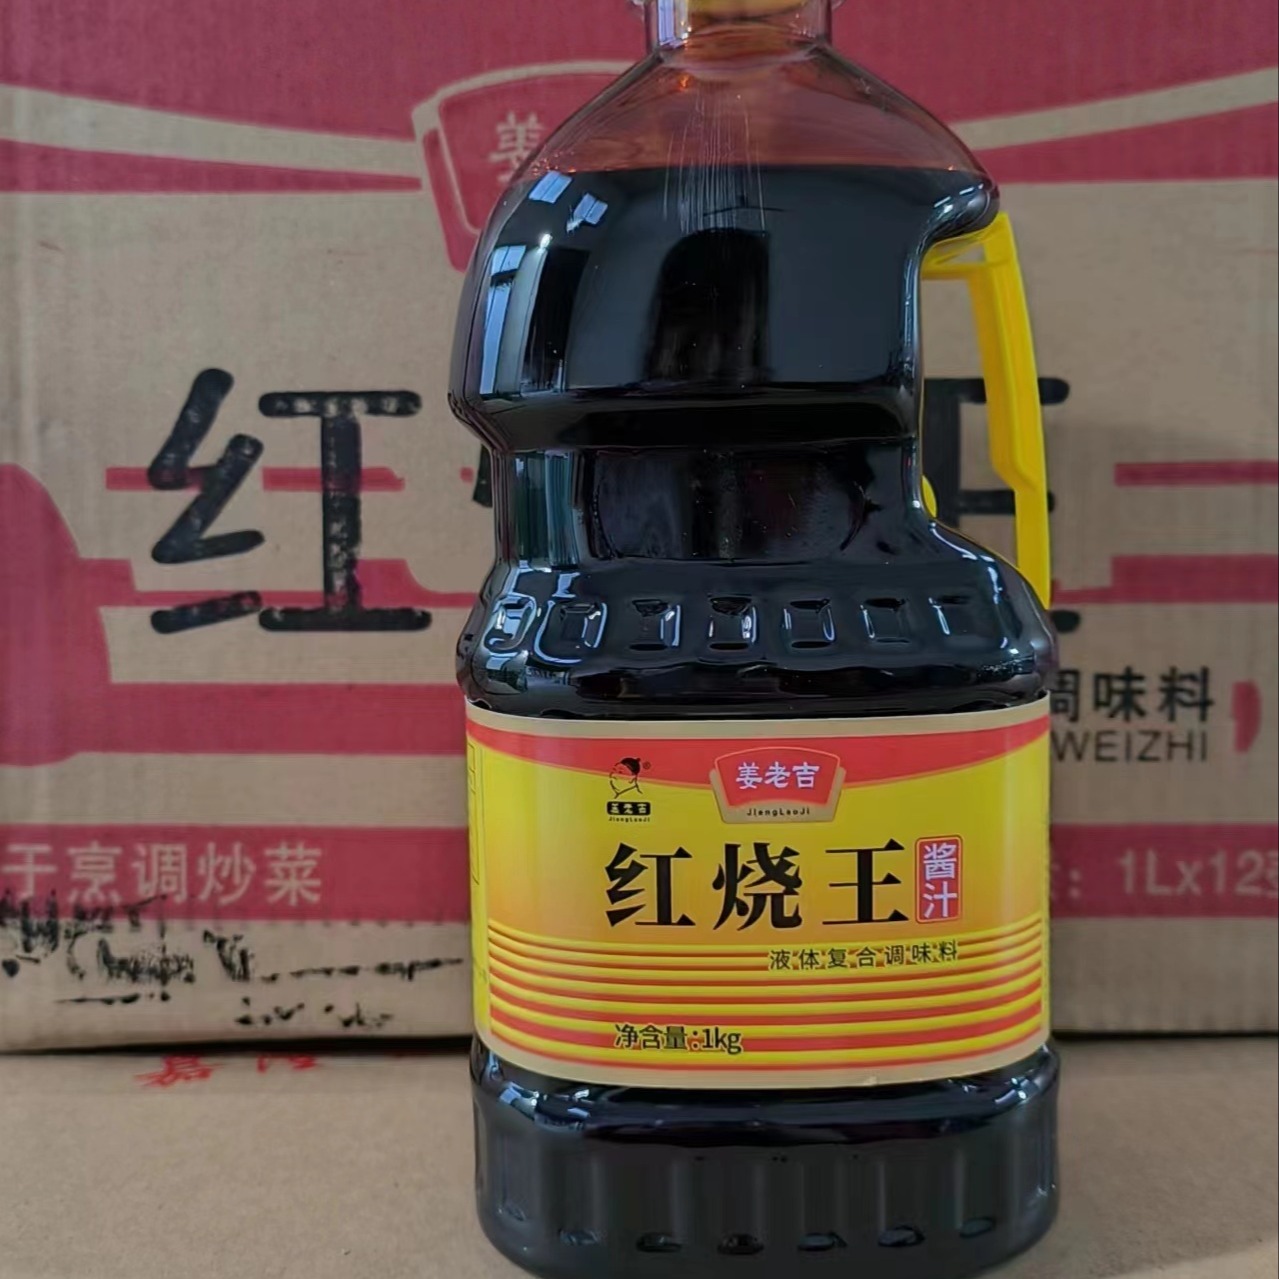 姜老吉 厂家直销 红烧王酱油批发 厨用家用 1kg老抽批发图片